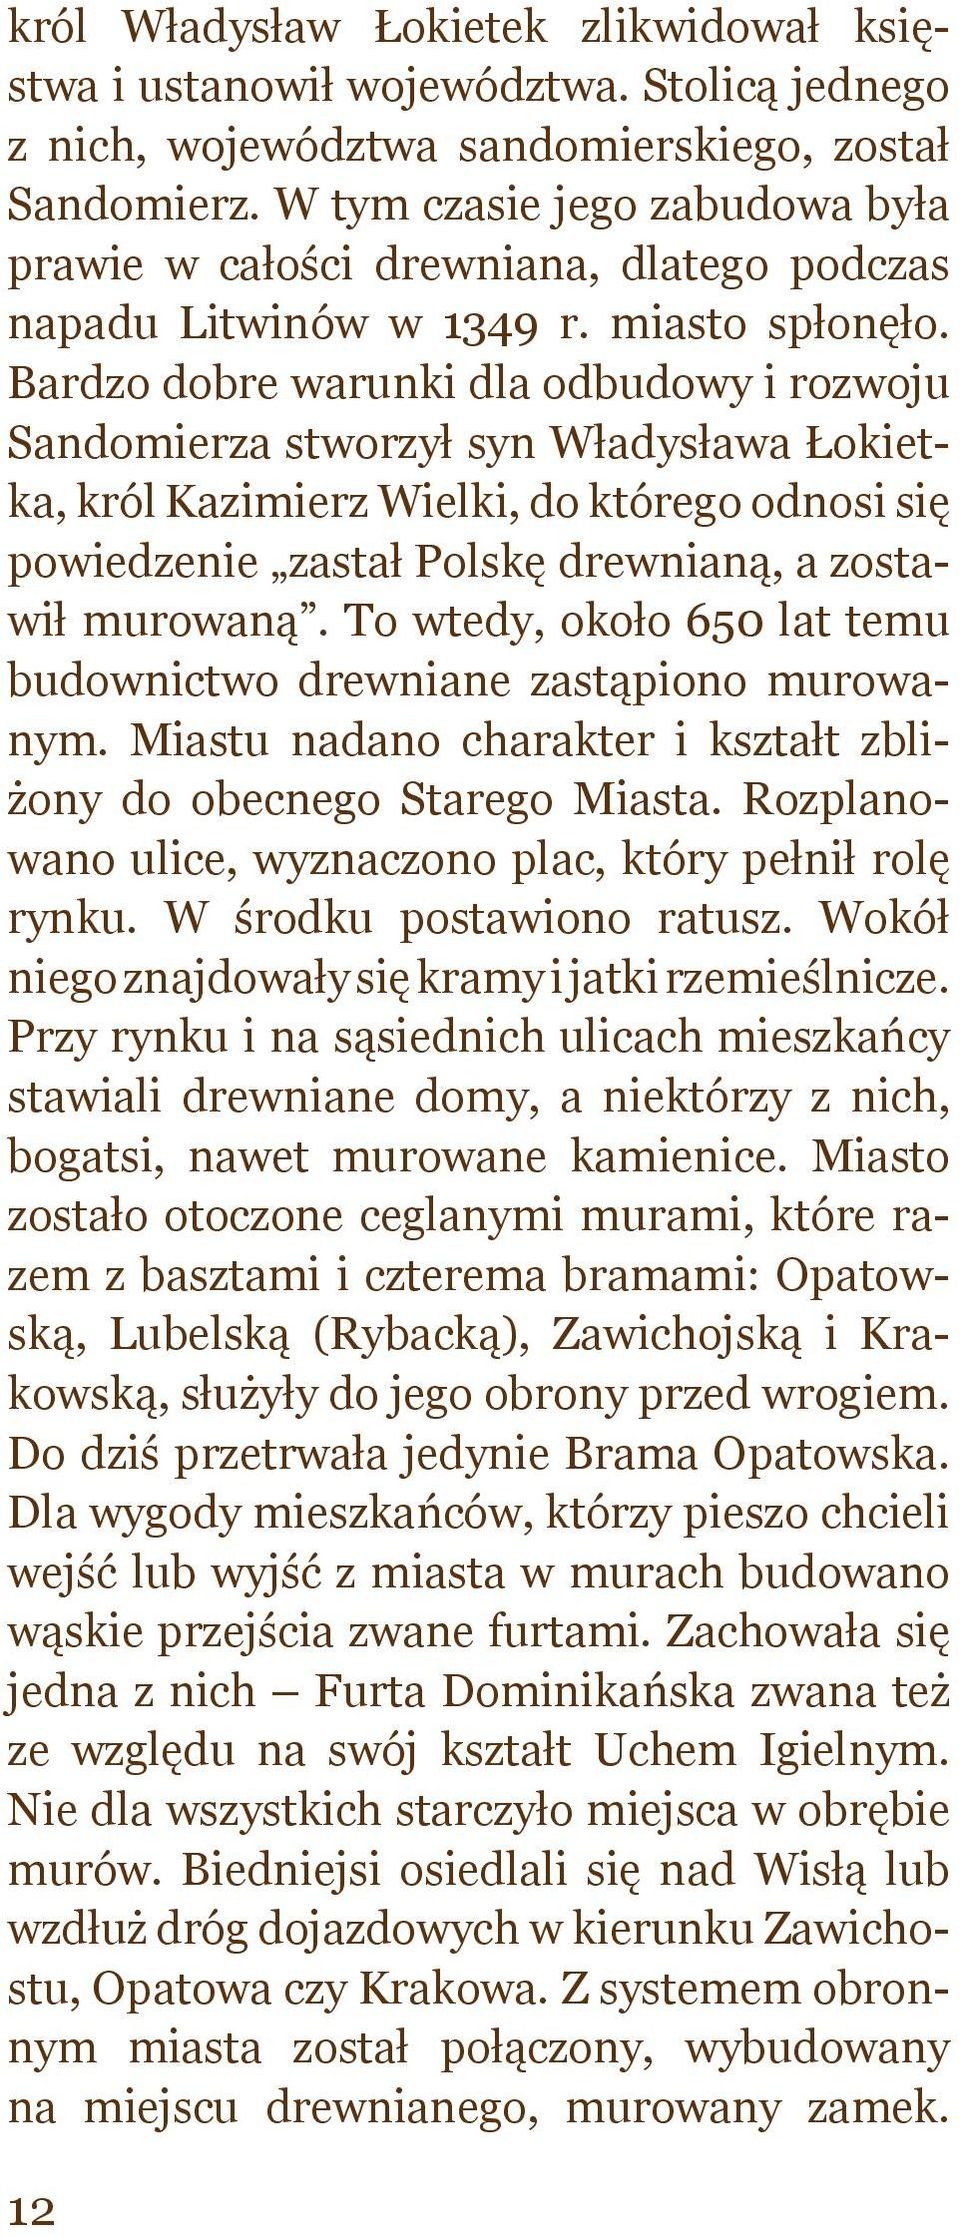 Bardzo dobre warunki dla odbudowy i rozwoju Sandomierza stworzył syn Władysława Łokietka, król Kazimierz Wielki, do którego odnosi się powiedzenie zastał Polskę drewnianą, a zostawił murowaną.